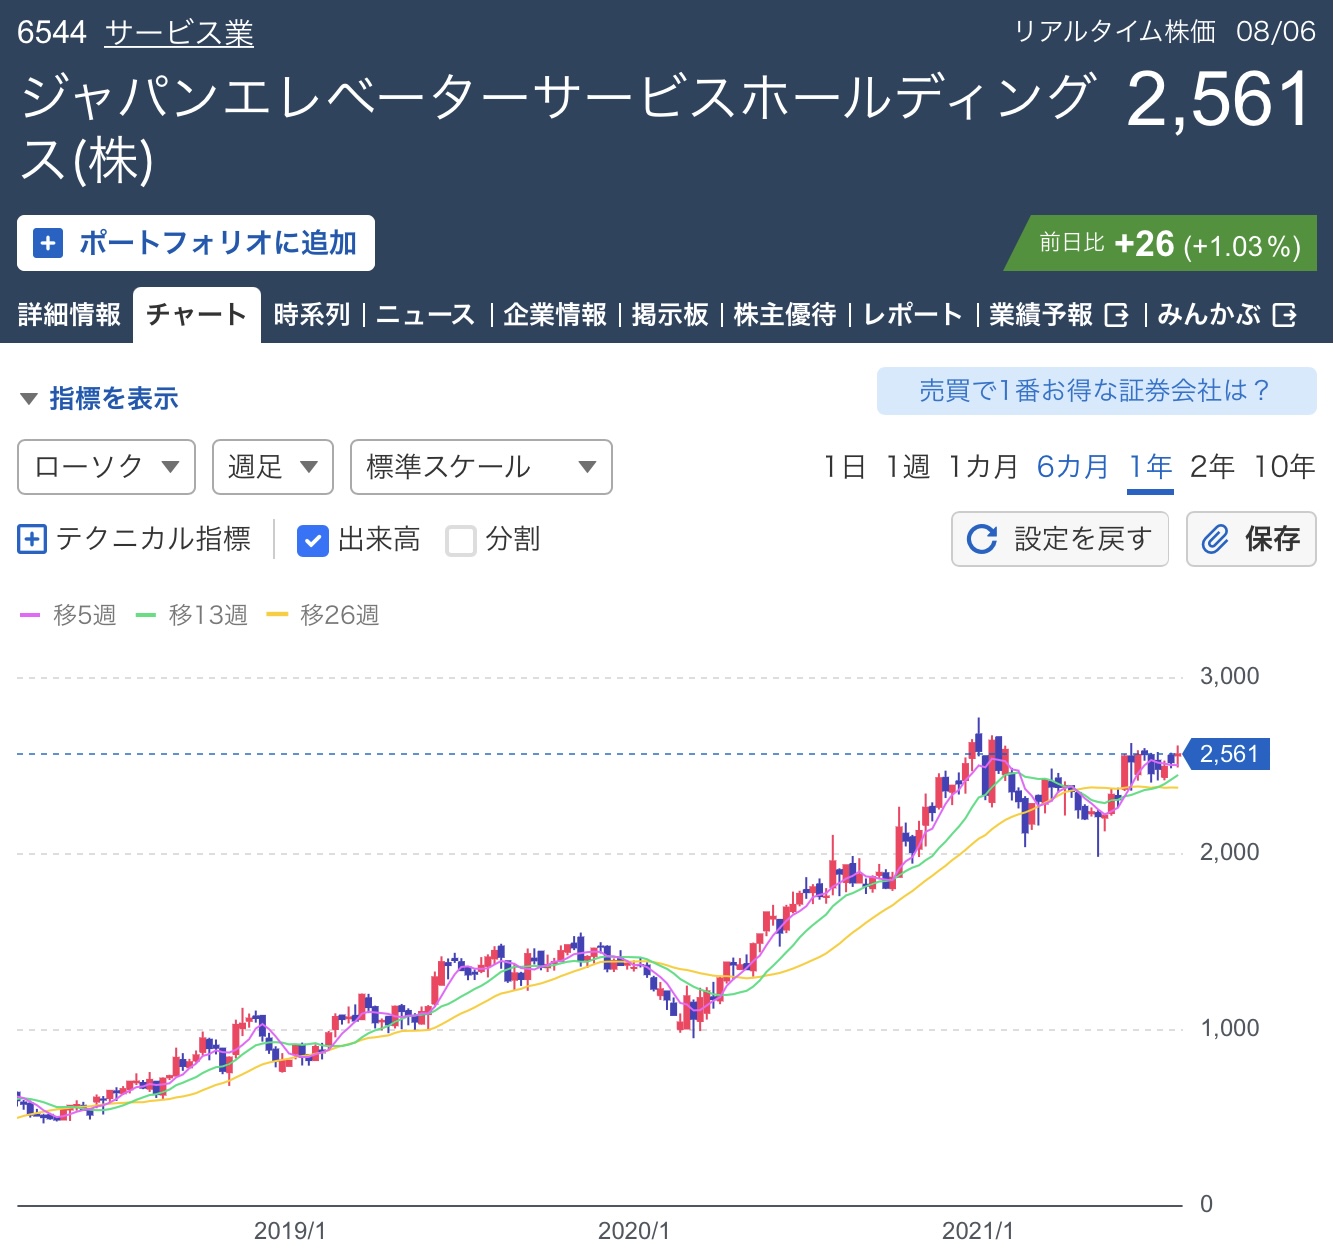 ジャパンエレベーターサービスホールディングス<6544>株価チャート